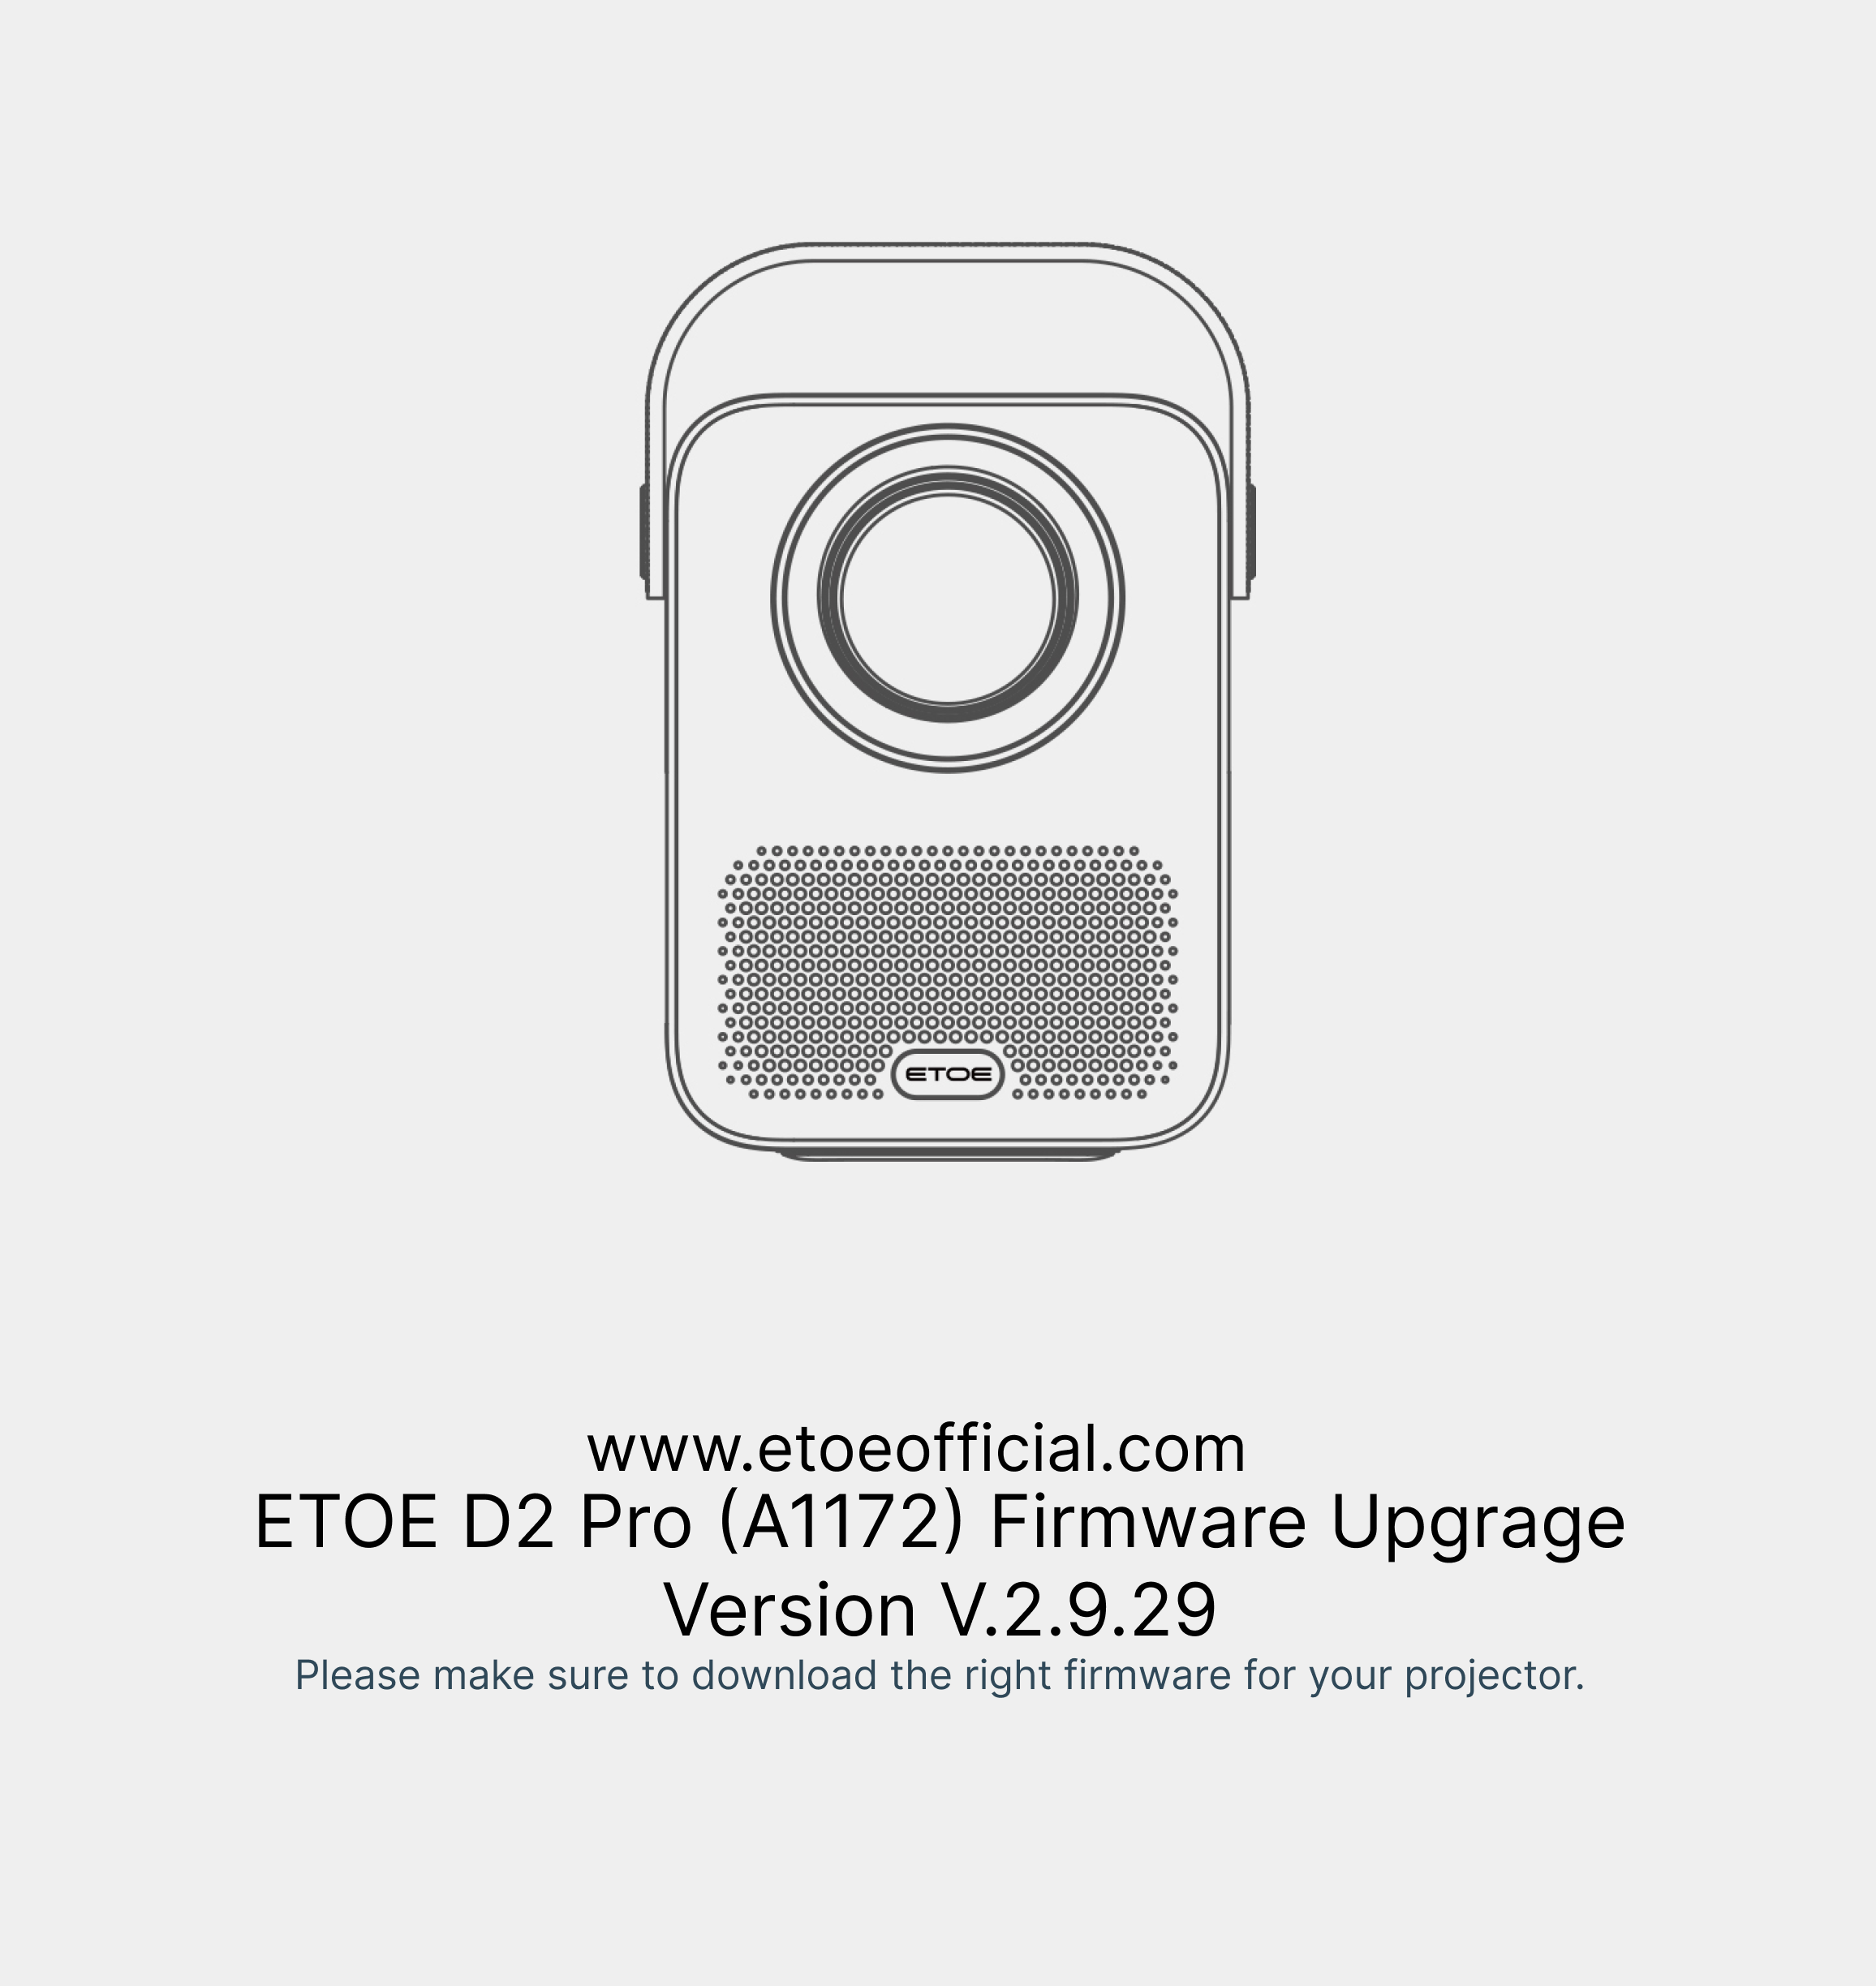 ETOE D2 Pro Firmware Upgrade